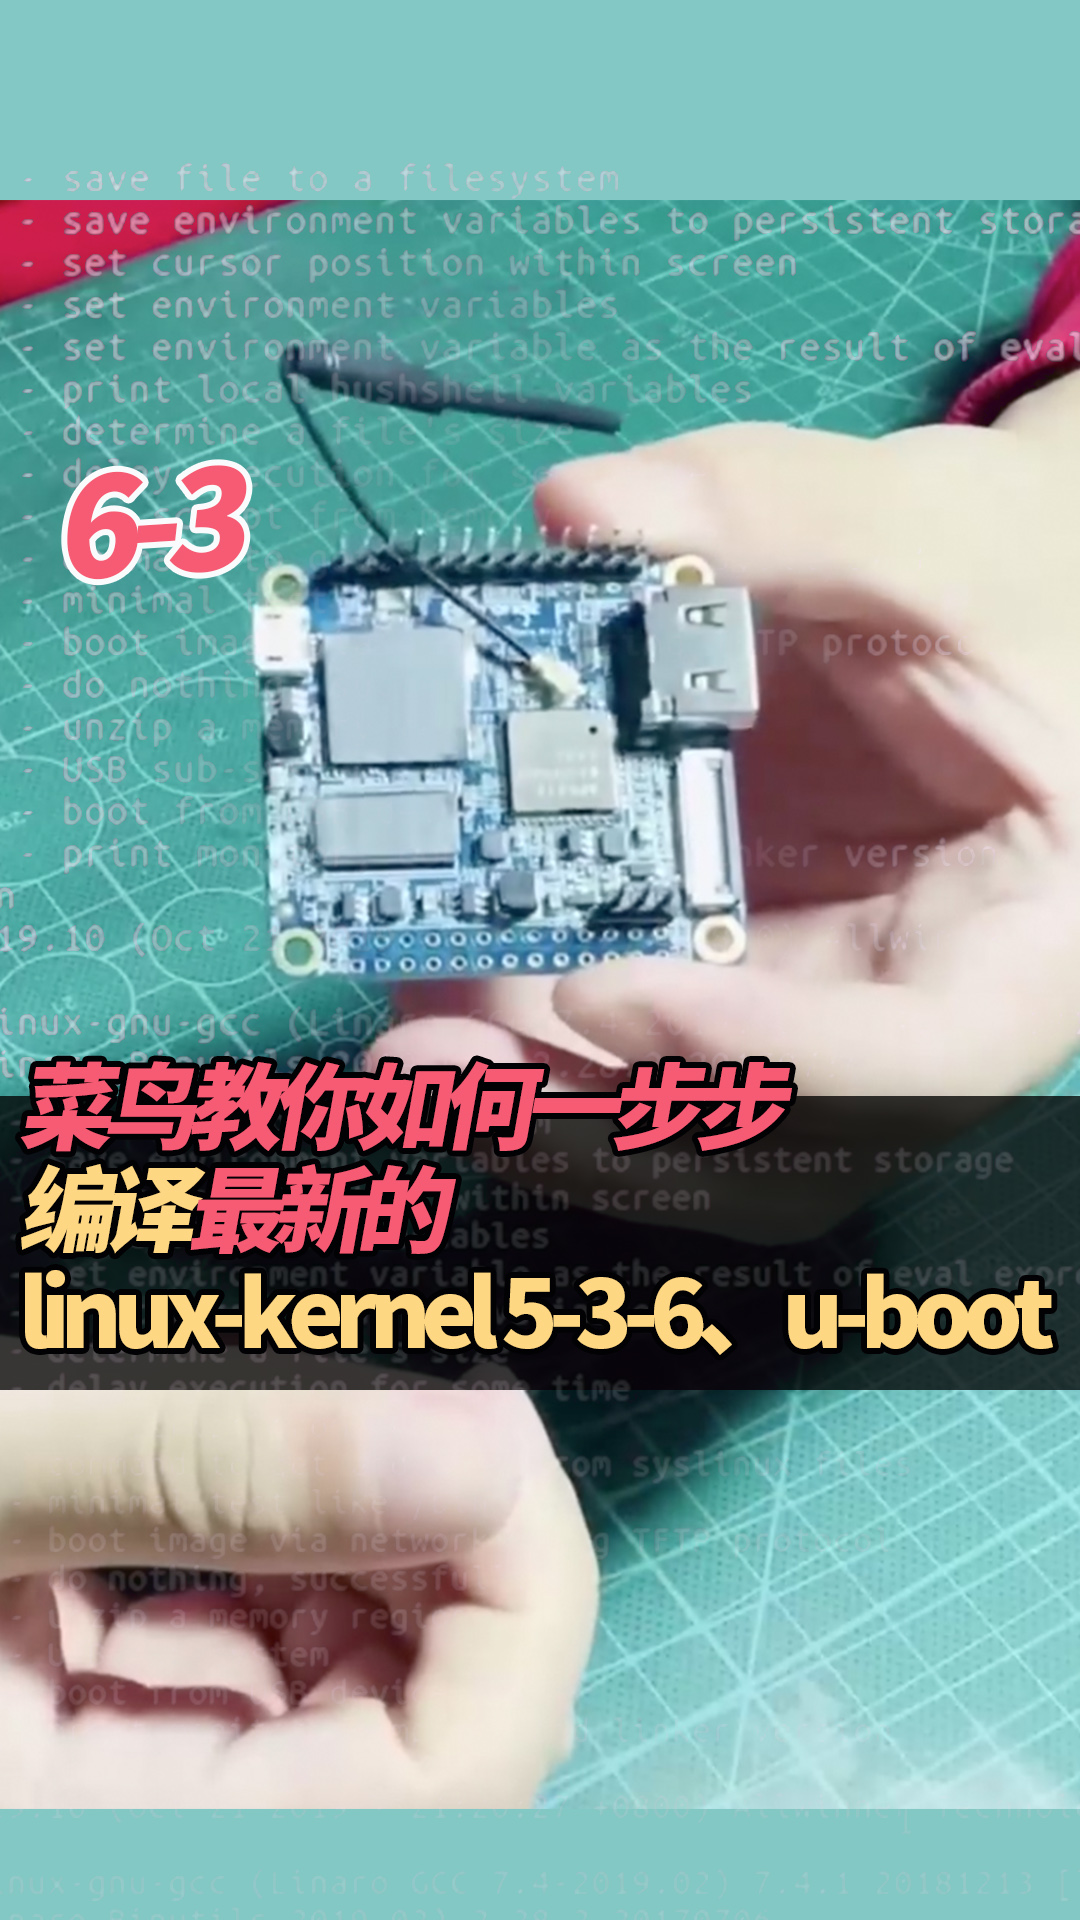 6-3菜鸟教你如何一步步编译最新的linux-kernel 5-3-6、u-boot#linux 